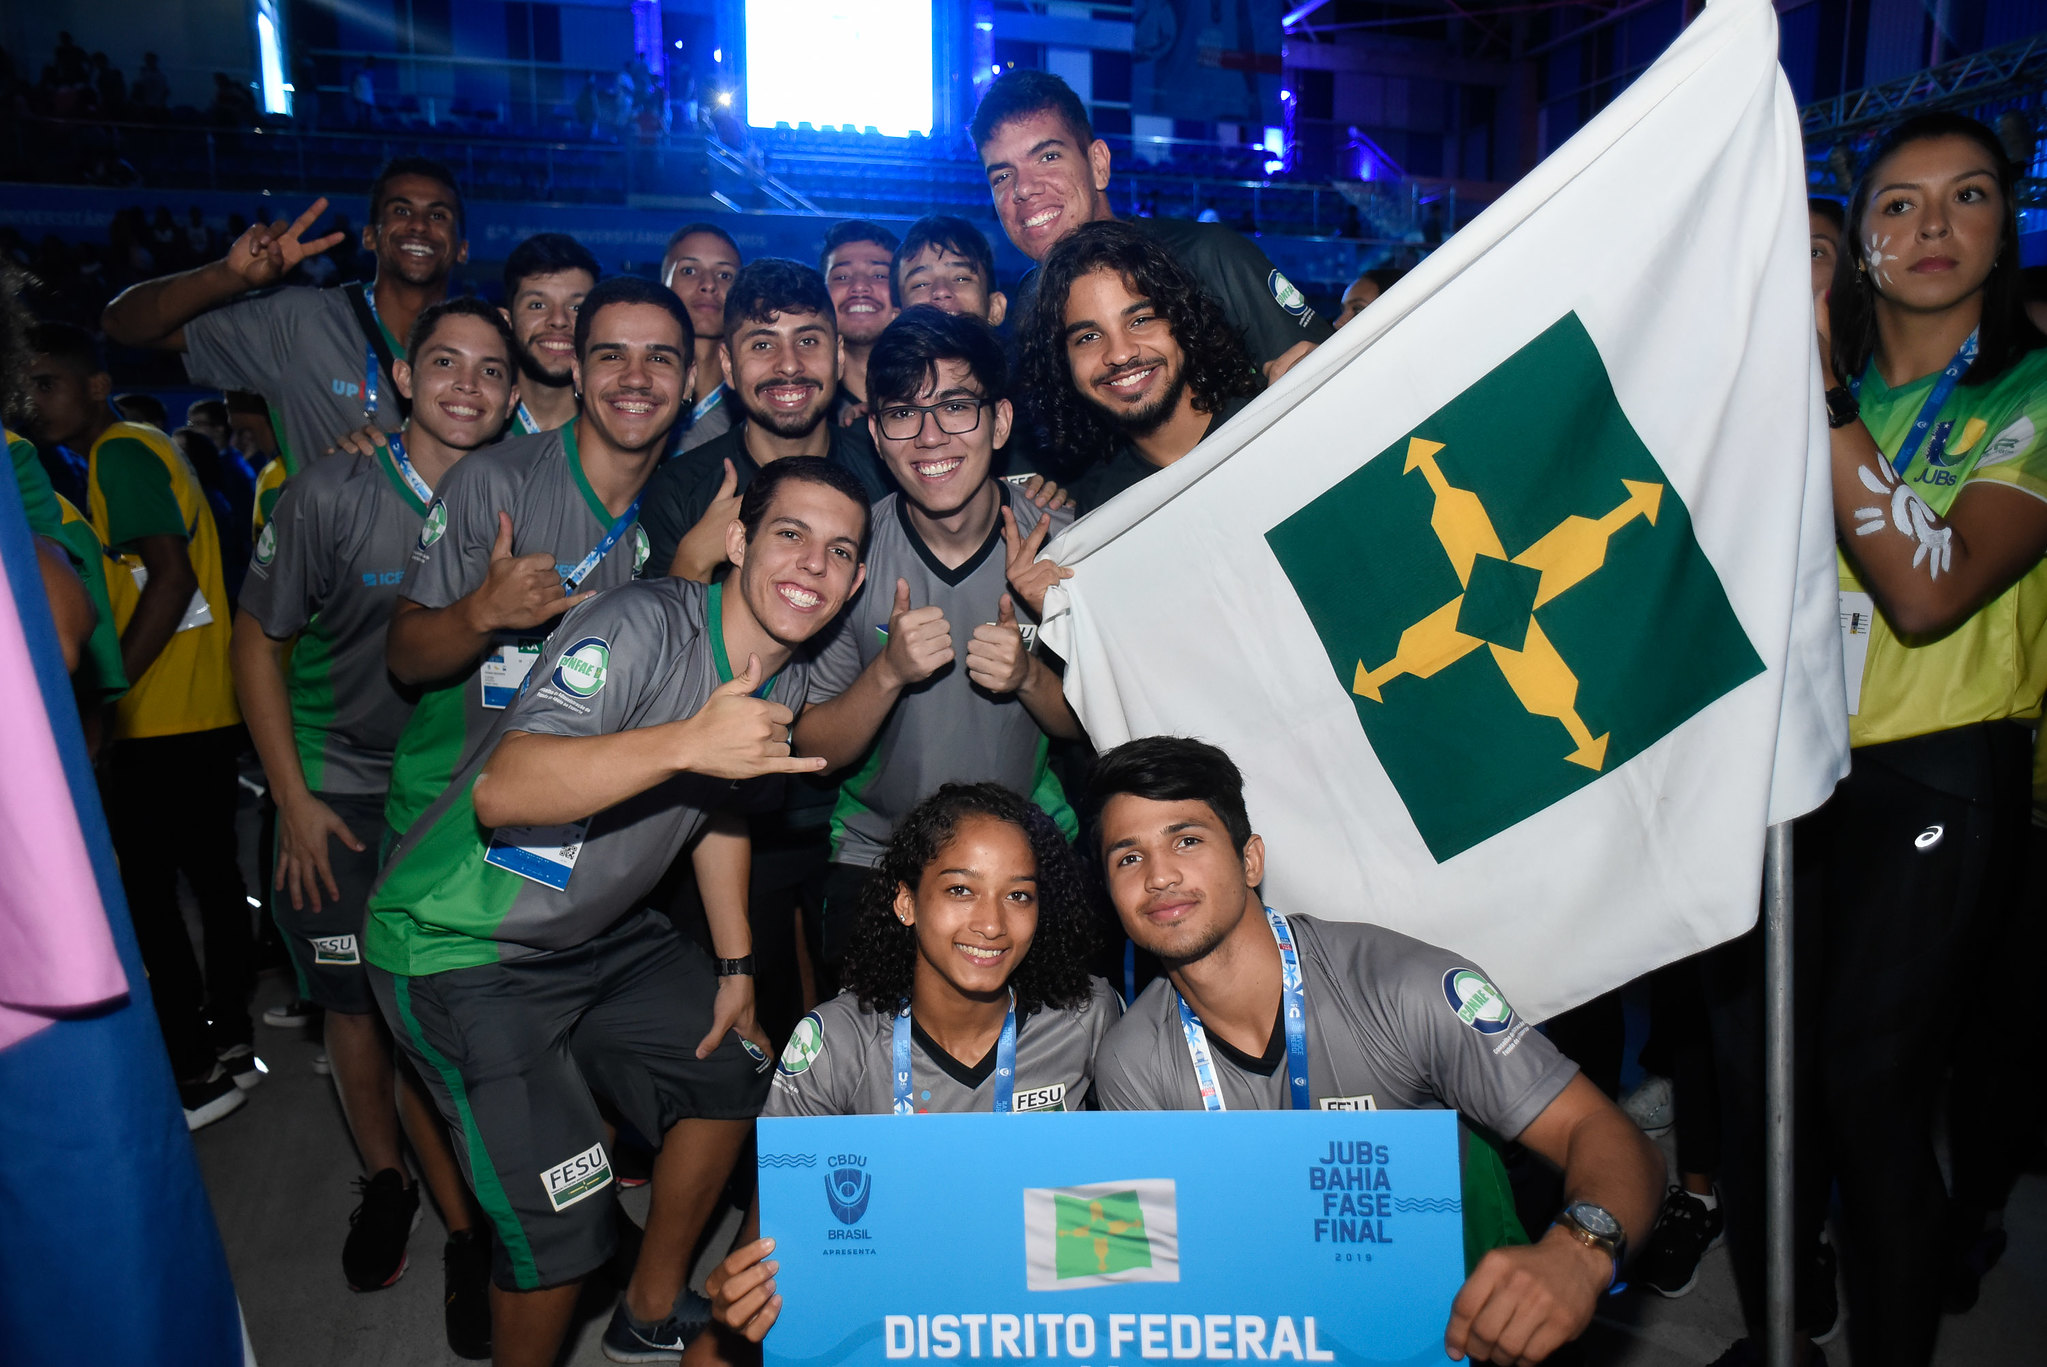 O Futsal Feminino nos Jogos Universitários Brasileiros (JUBs) 2021